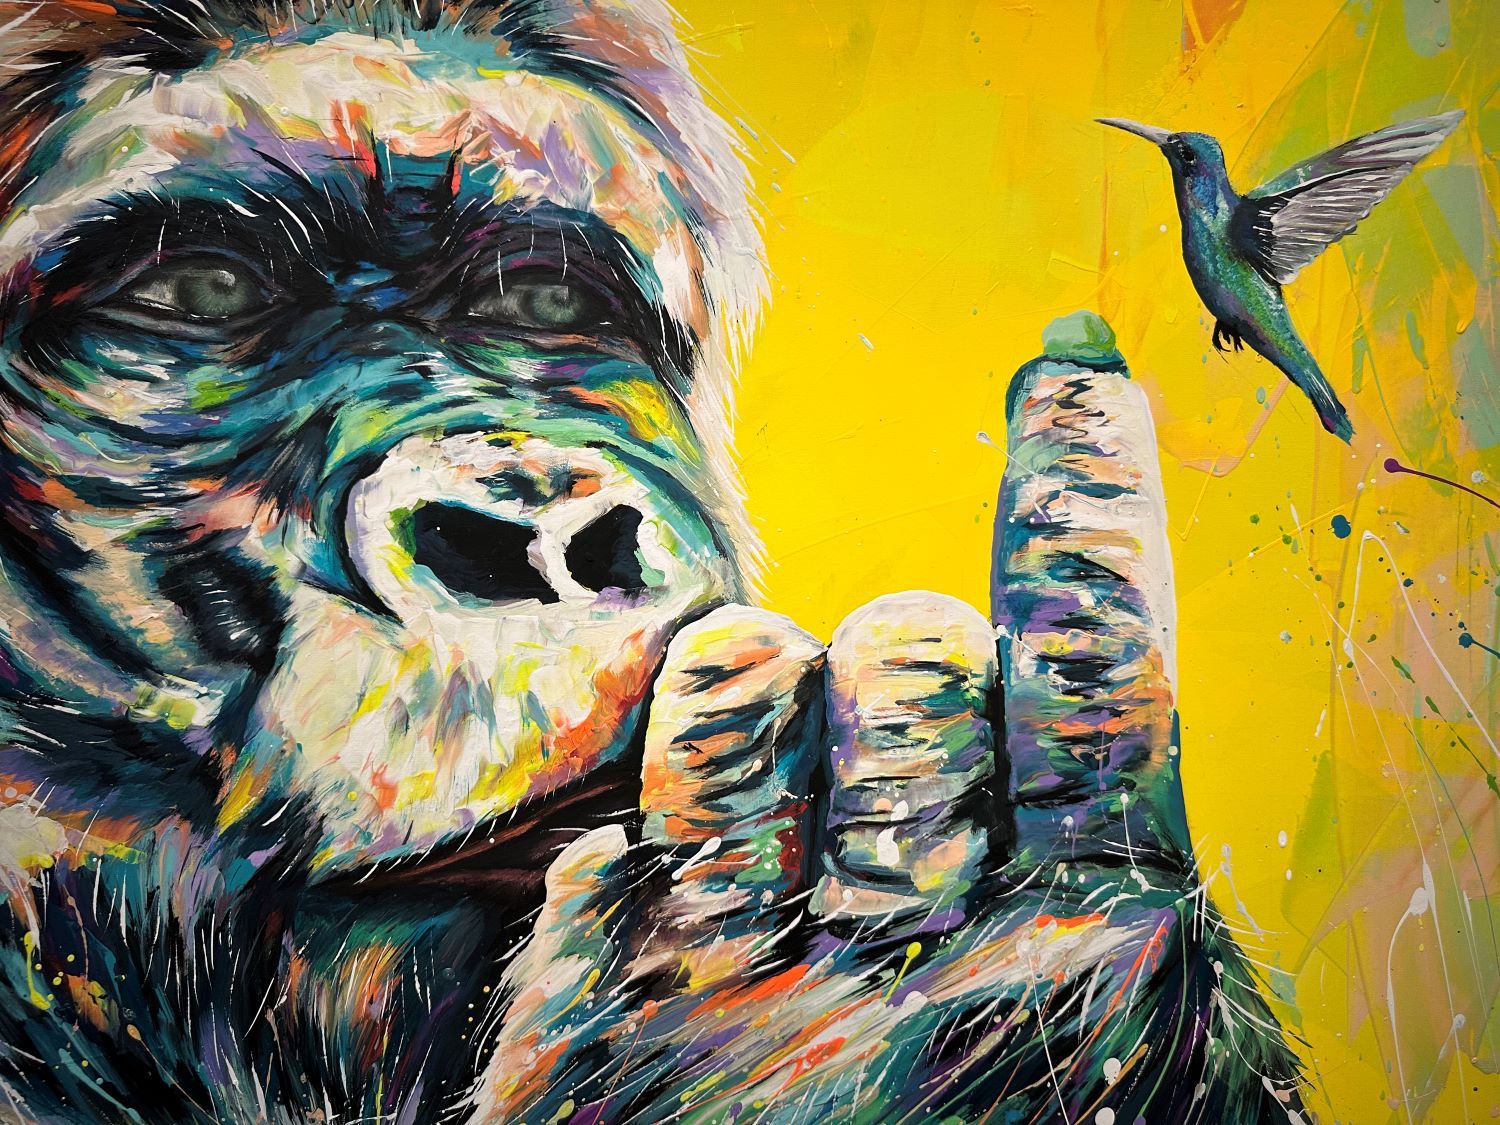 Gorilla and colibrì